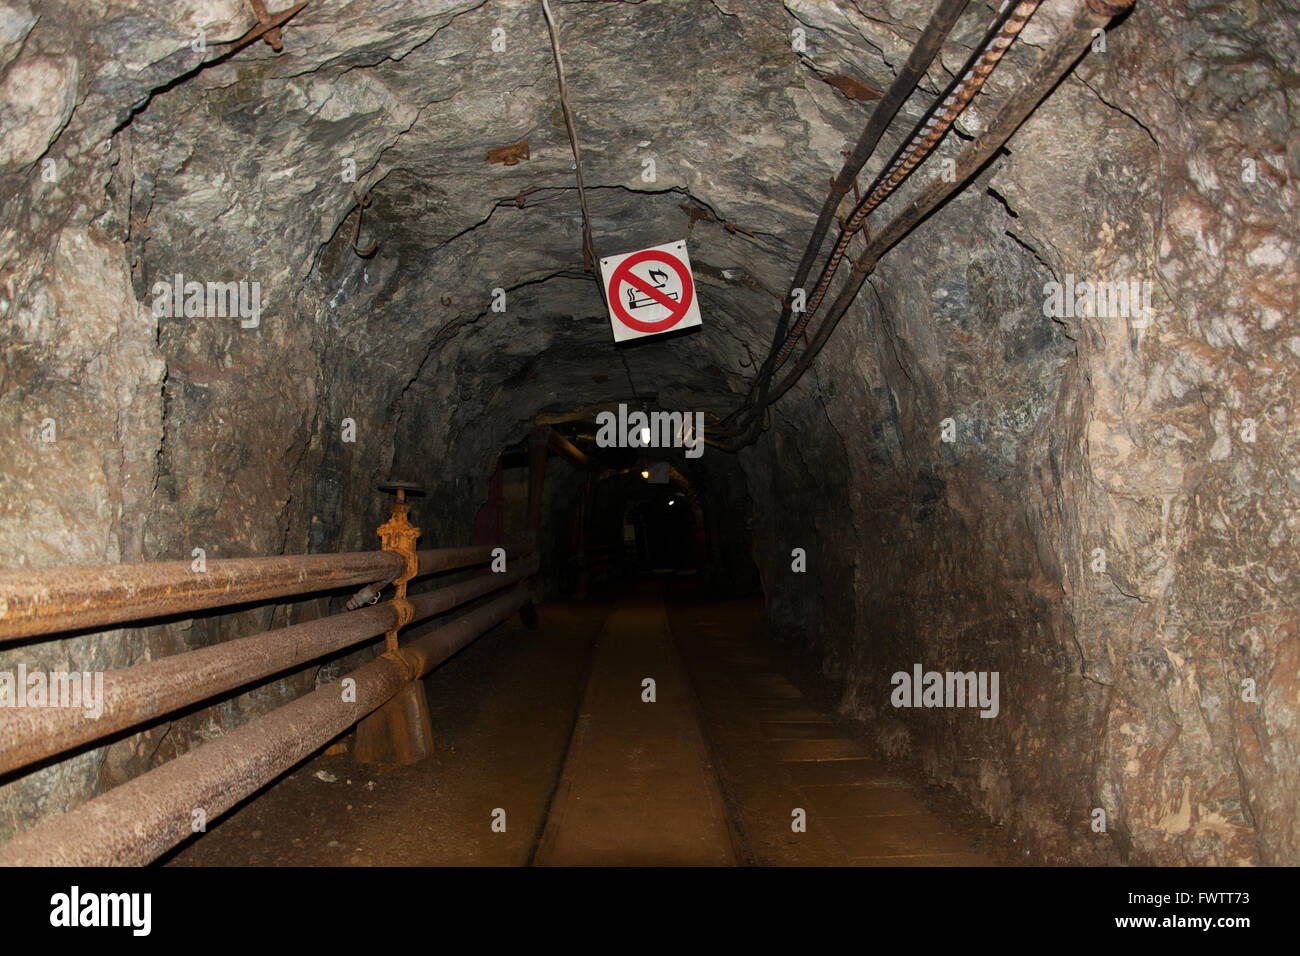 Fotografía tomada en una mina subterránea en Poehla, Erz Montañas, Alemania. Foto de stock